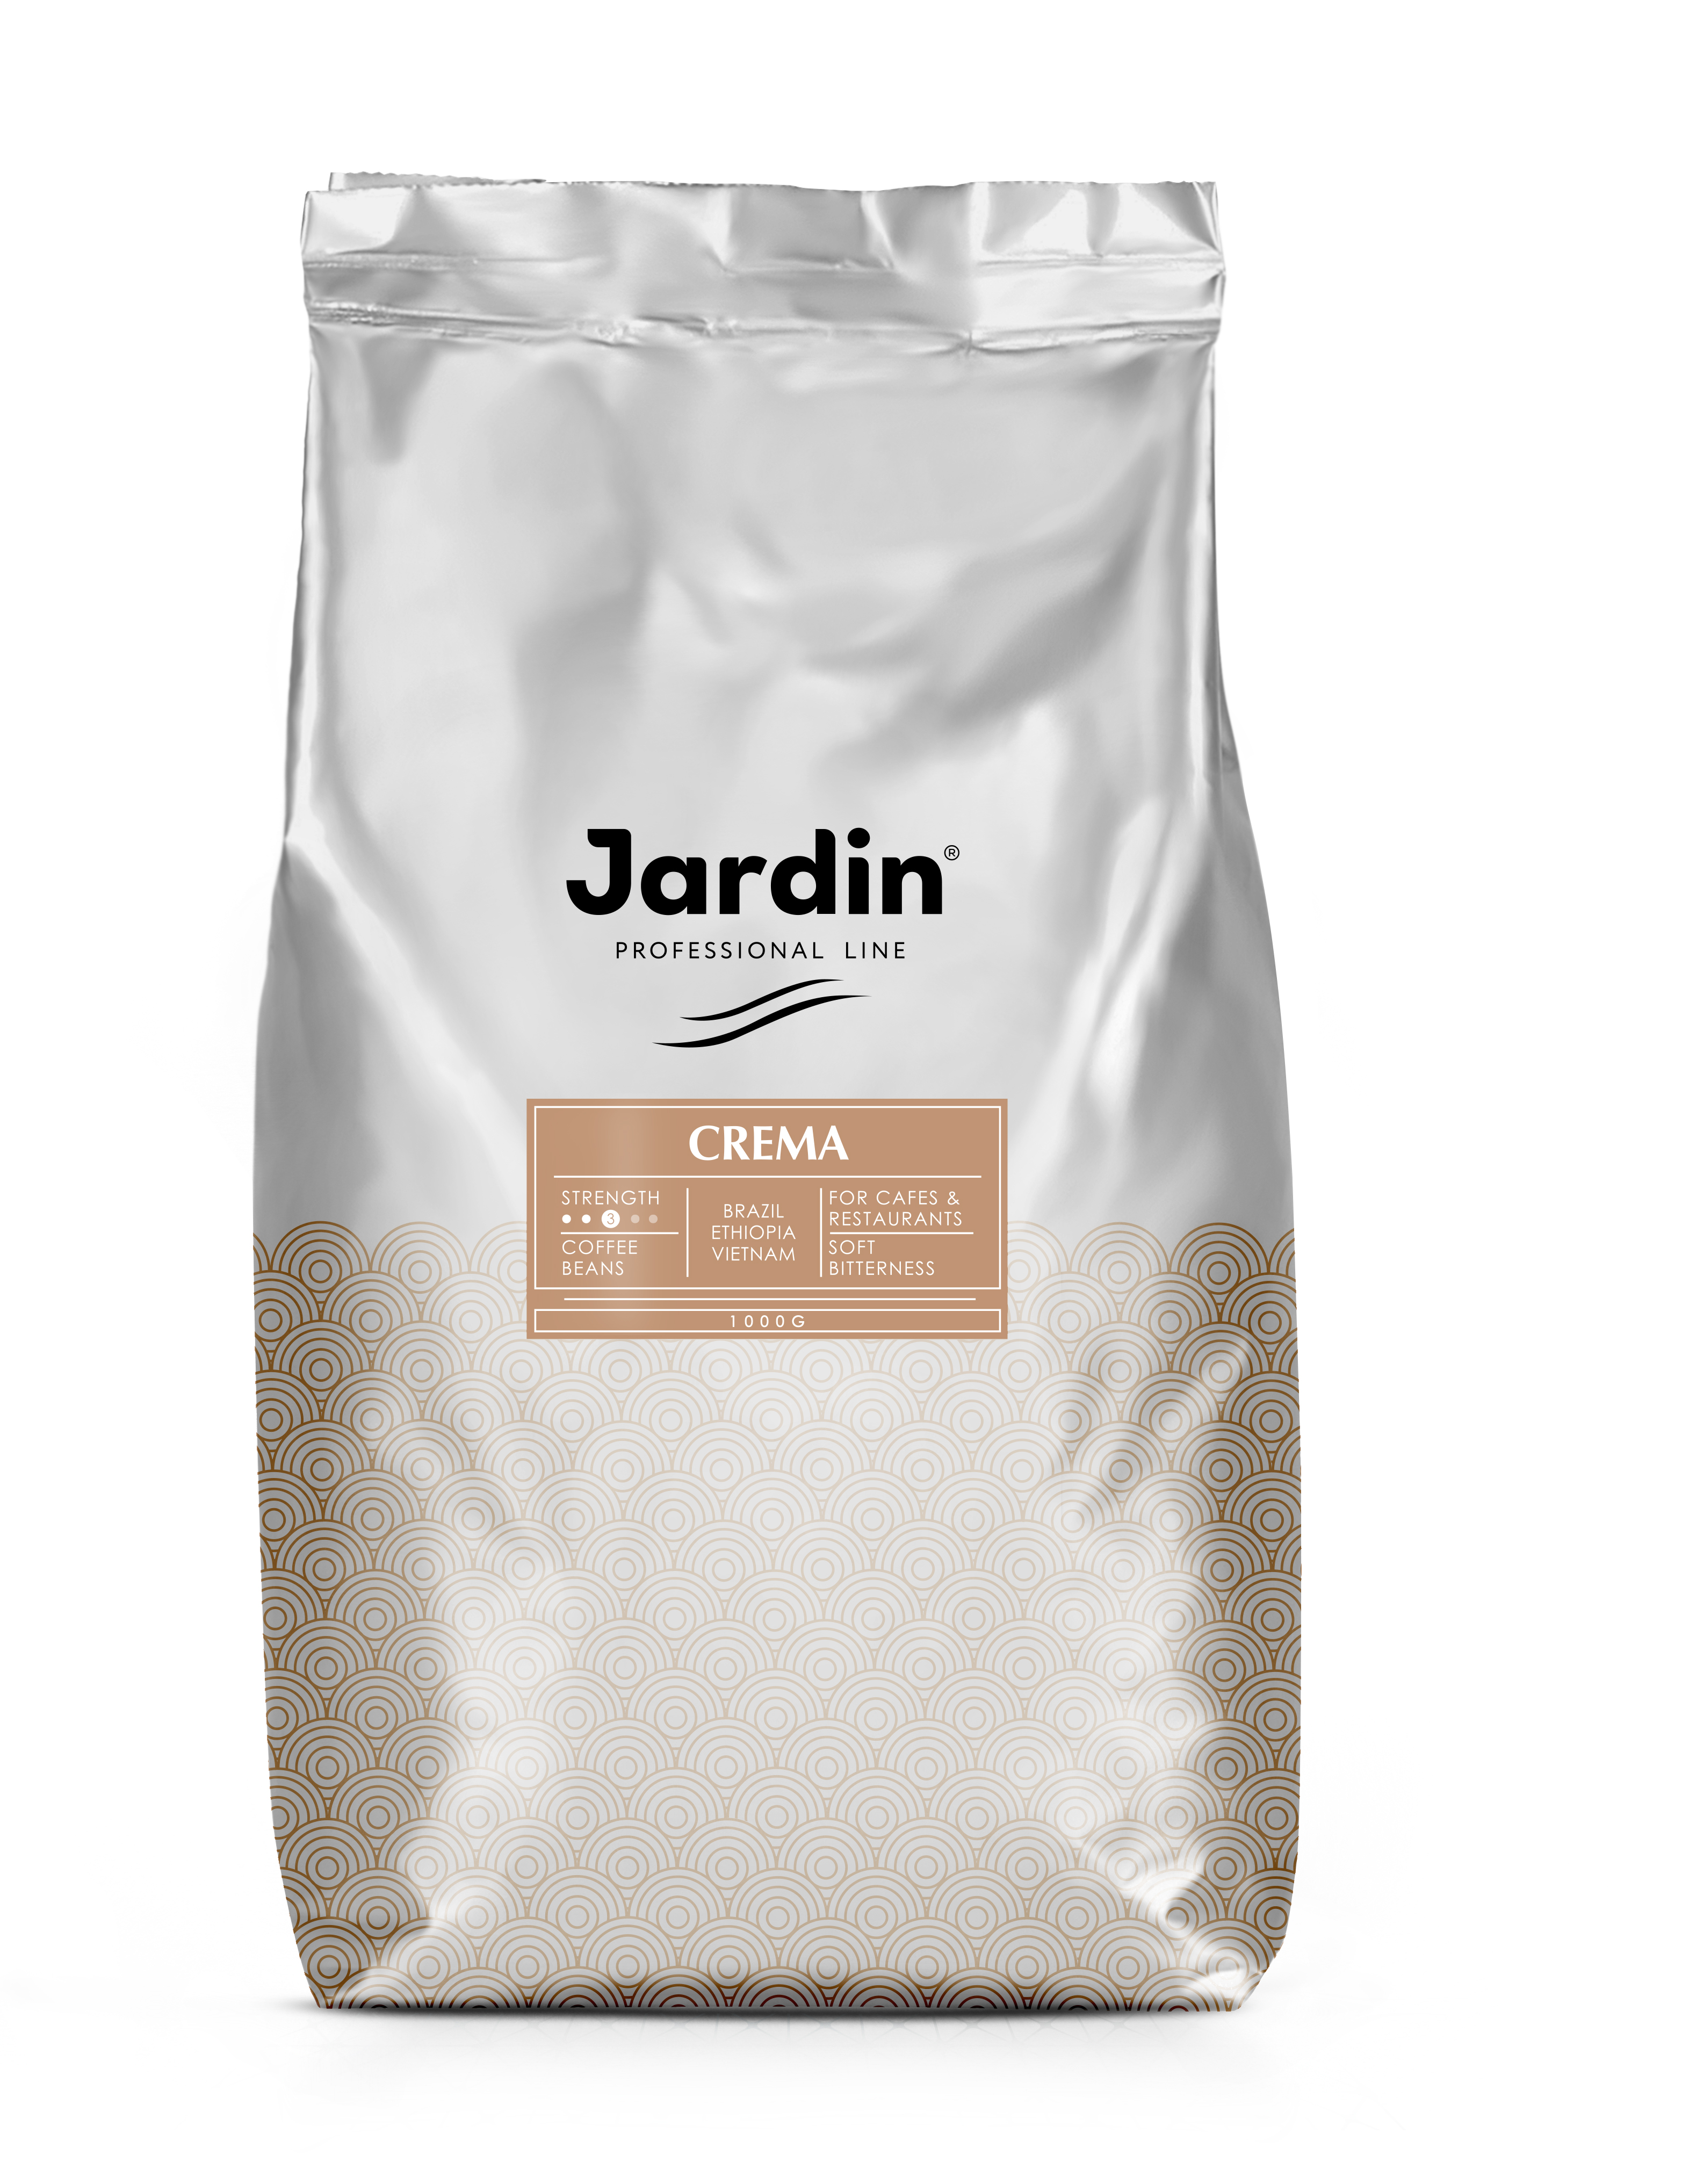 Кофе в зернах Jardin Crema (1кг) Для сегмента HoReCa